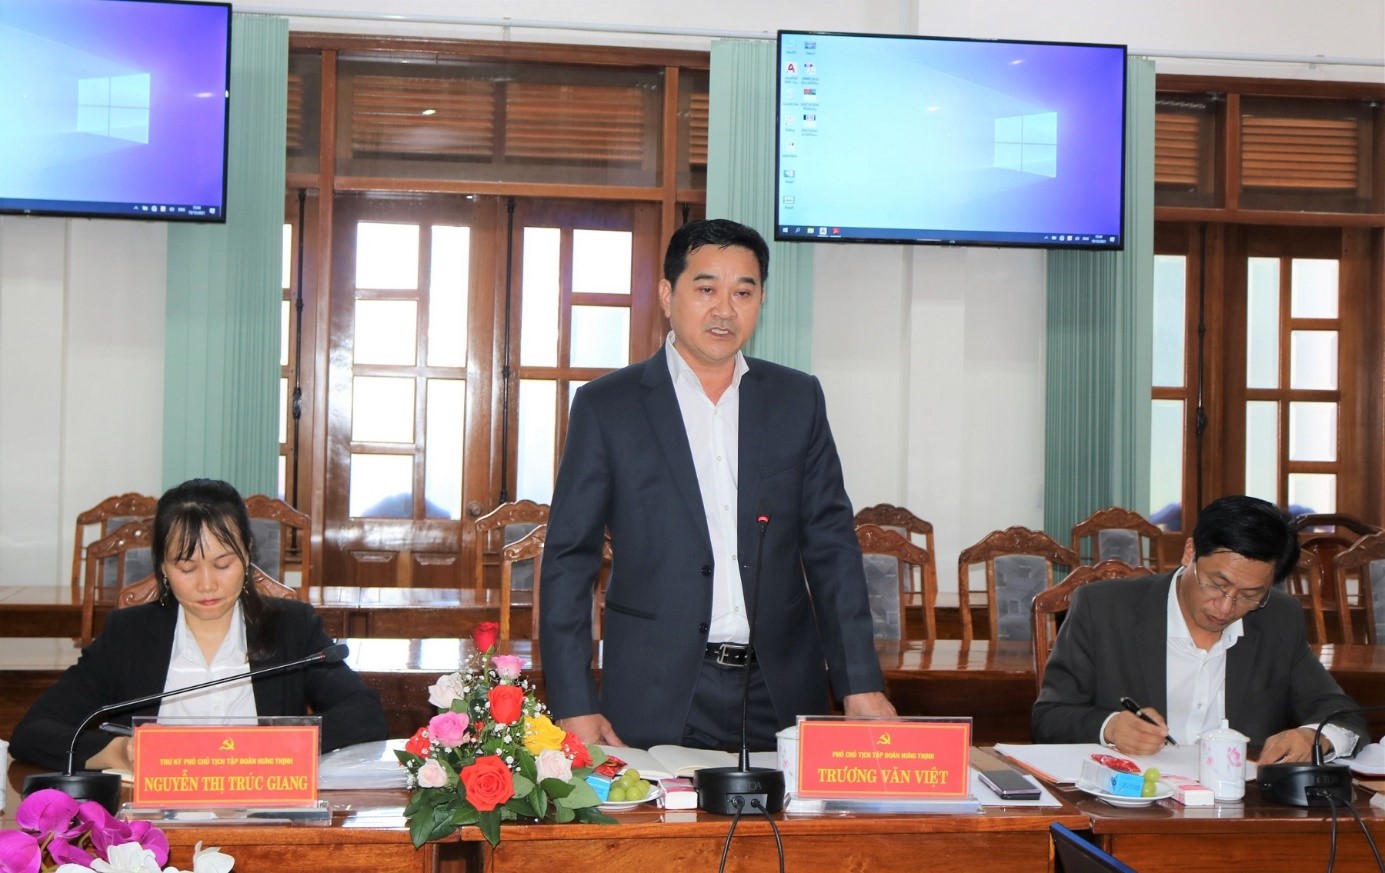 Ông Trương Văn Việt, Phó chủ tịch HĐQT Tập đoàn Hưng Thịnh báo cáo Dự án tại buổi làm việc.